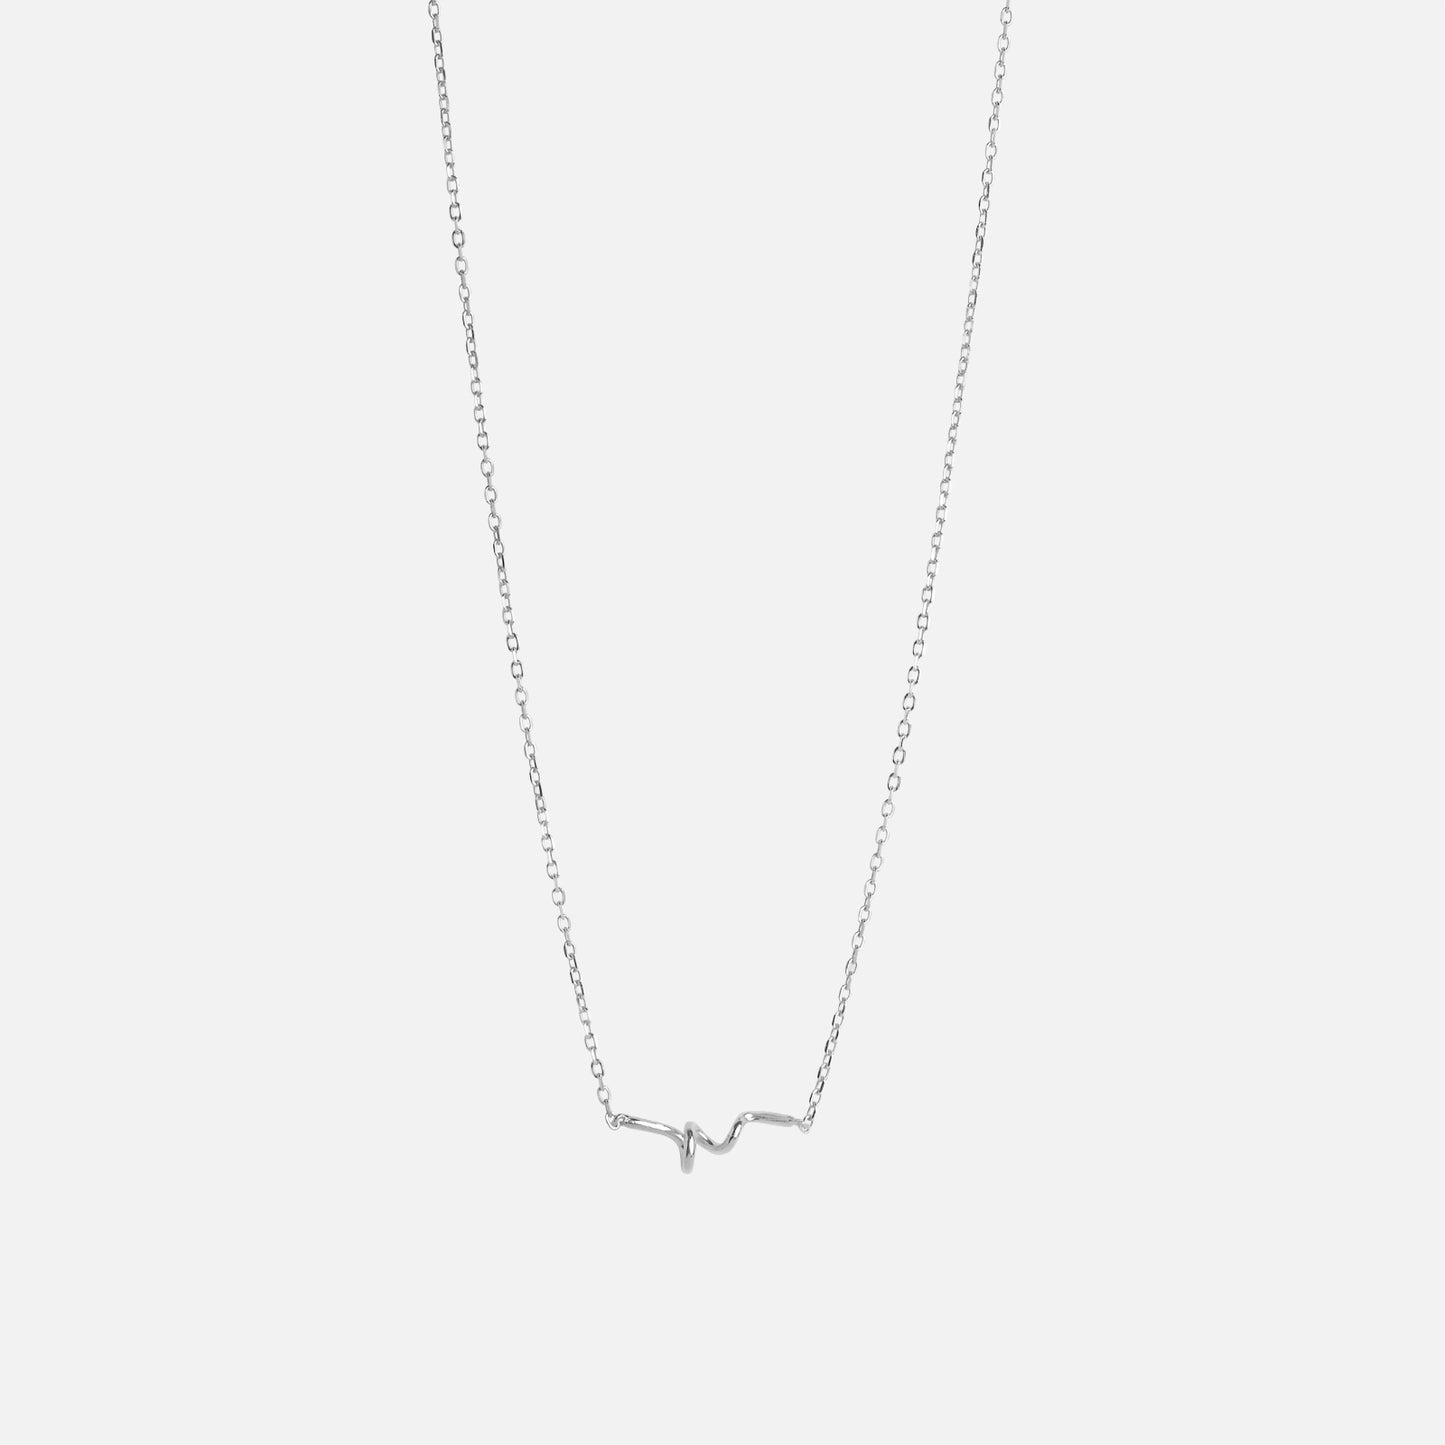 Twist Necklace fra Enamel i sølv